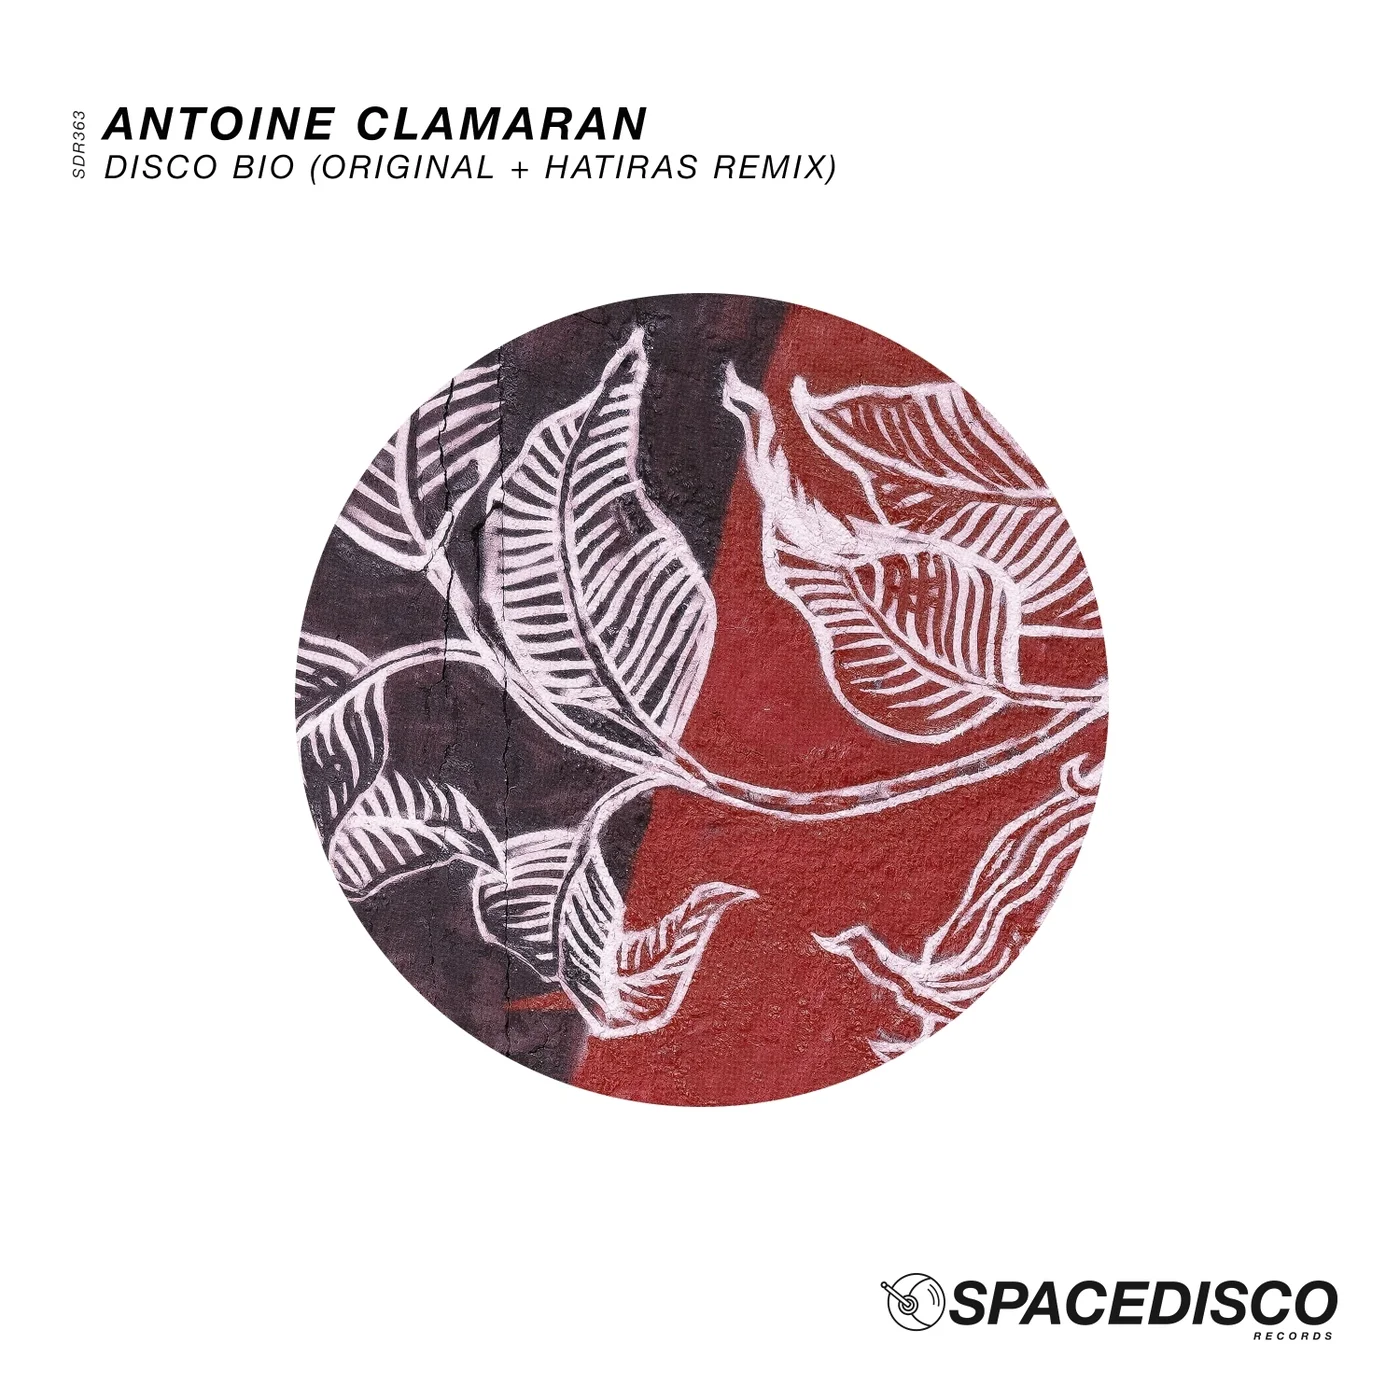 Antoine Clamaran - Disco Bio (Hatiras Remix)